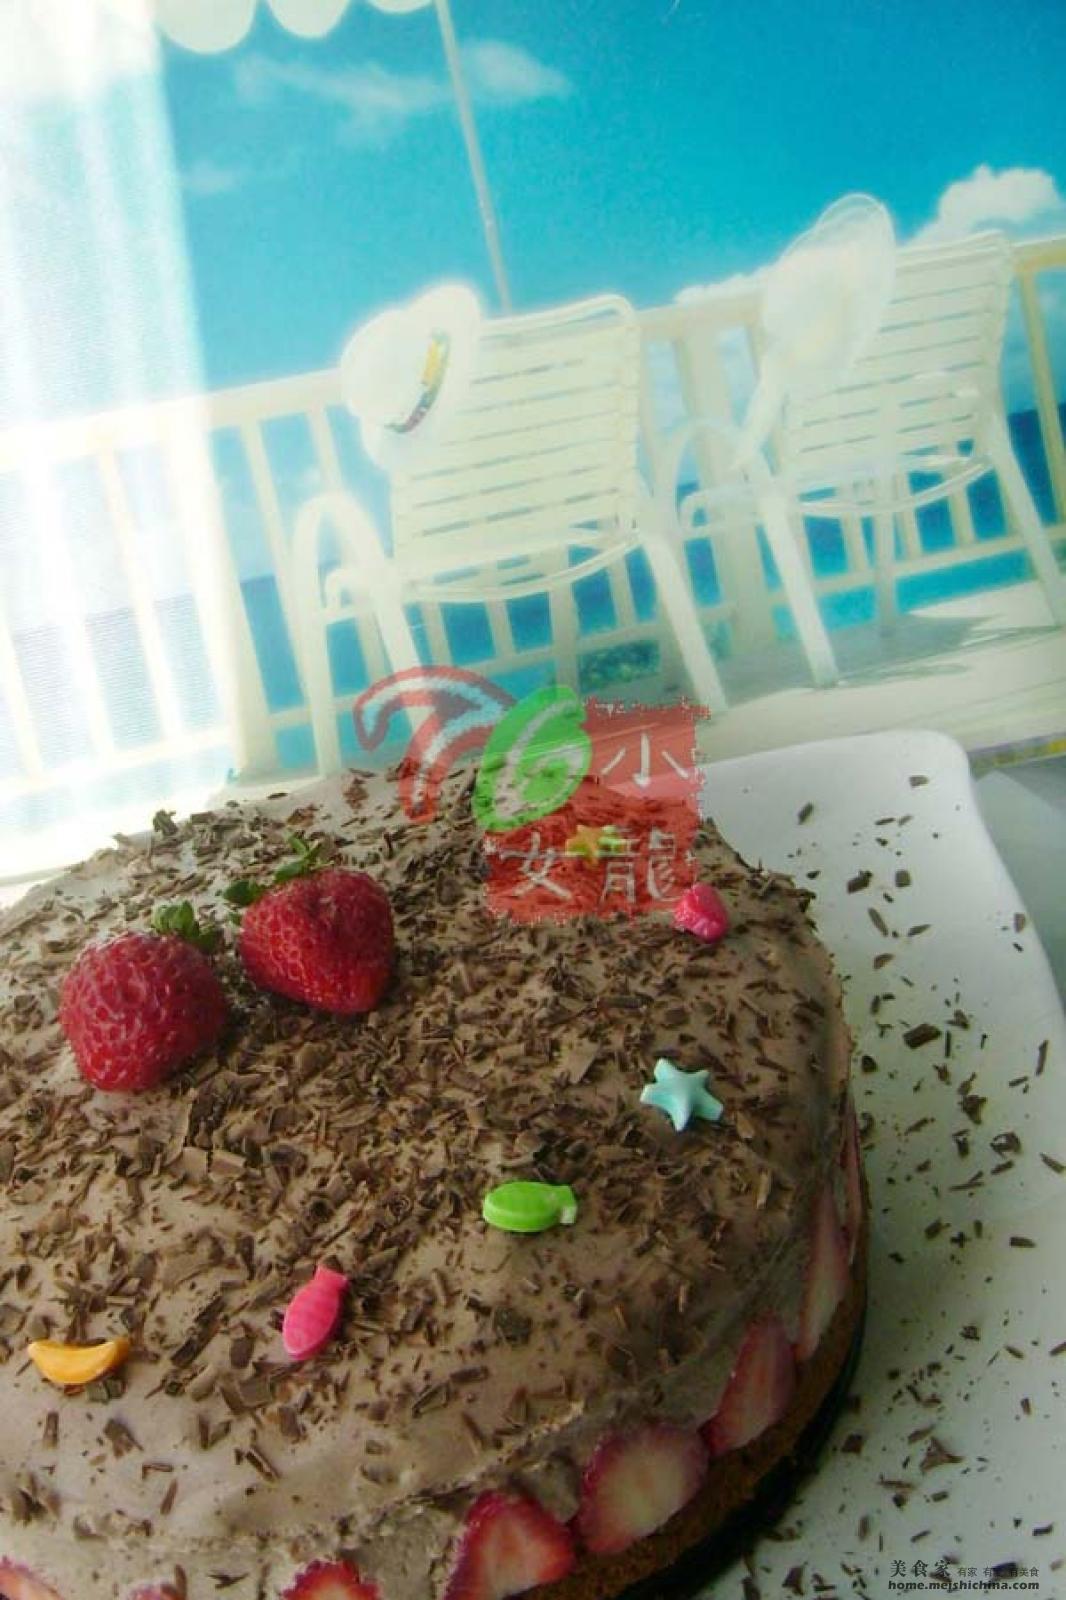 焦糖巧克力慕斯蛋糕 | Caramel Chocolate Mousse Cake - 不萊嗯的烘焙食譜 | 不萊嗯的烘焙廚房